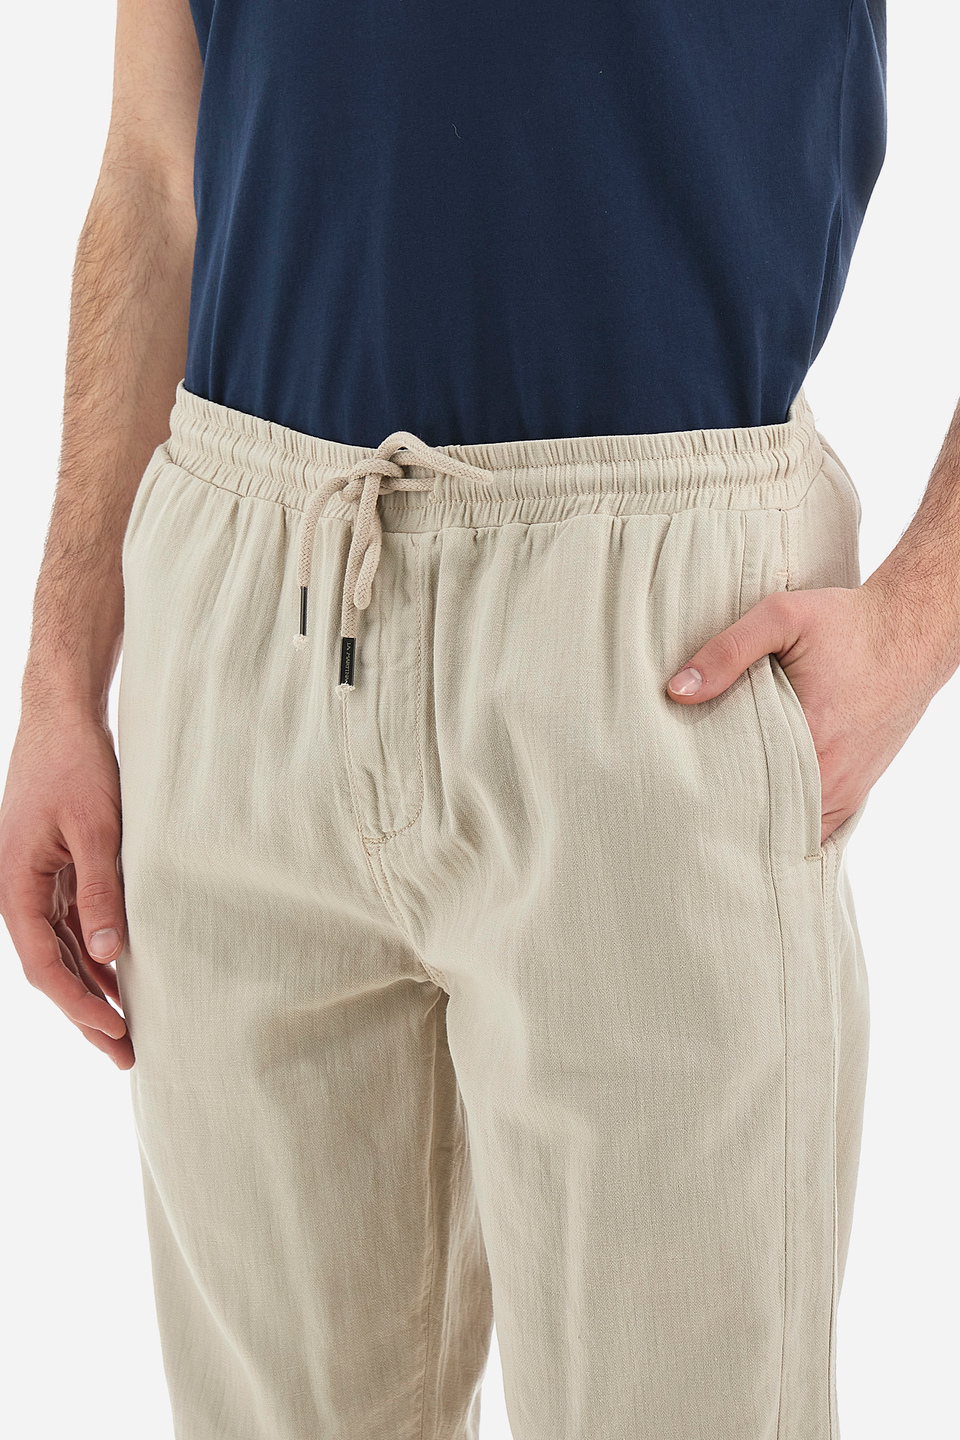 Pantalon homme coupe droite en coton et lin - Vann | La Martina - Official Online Shop